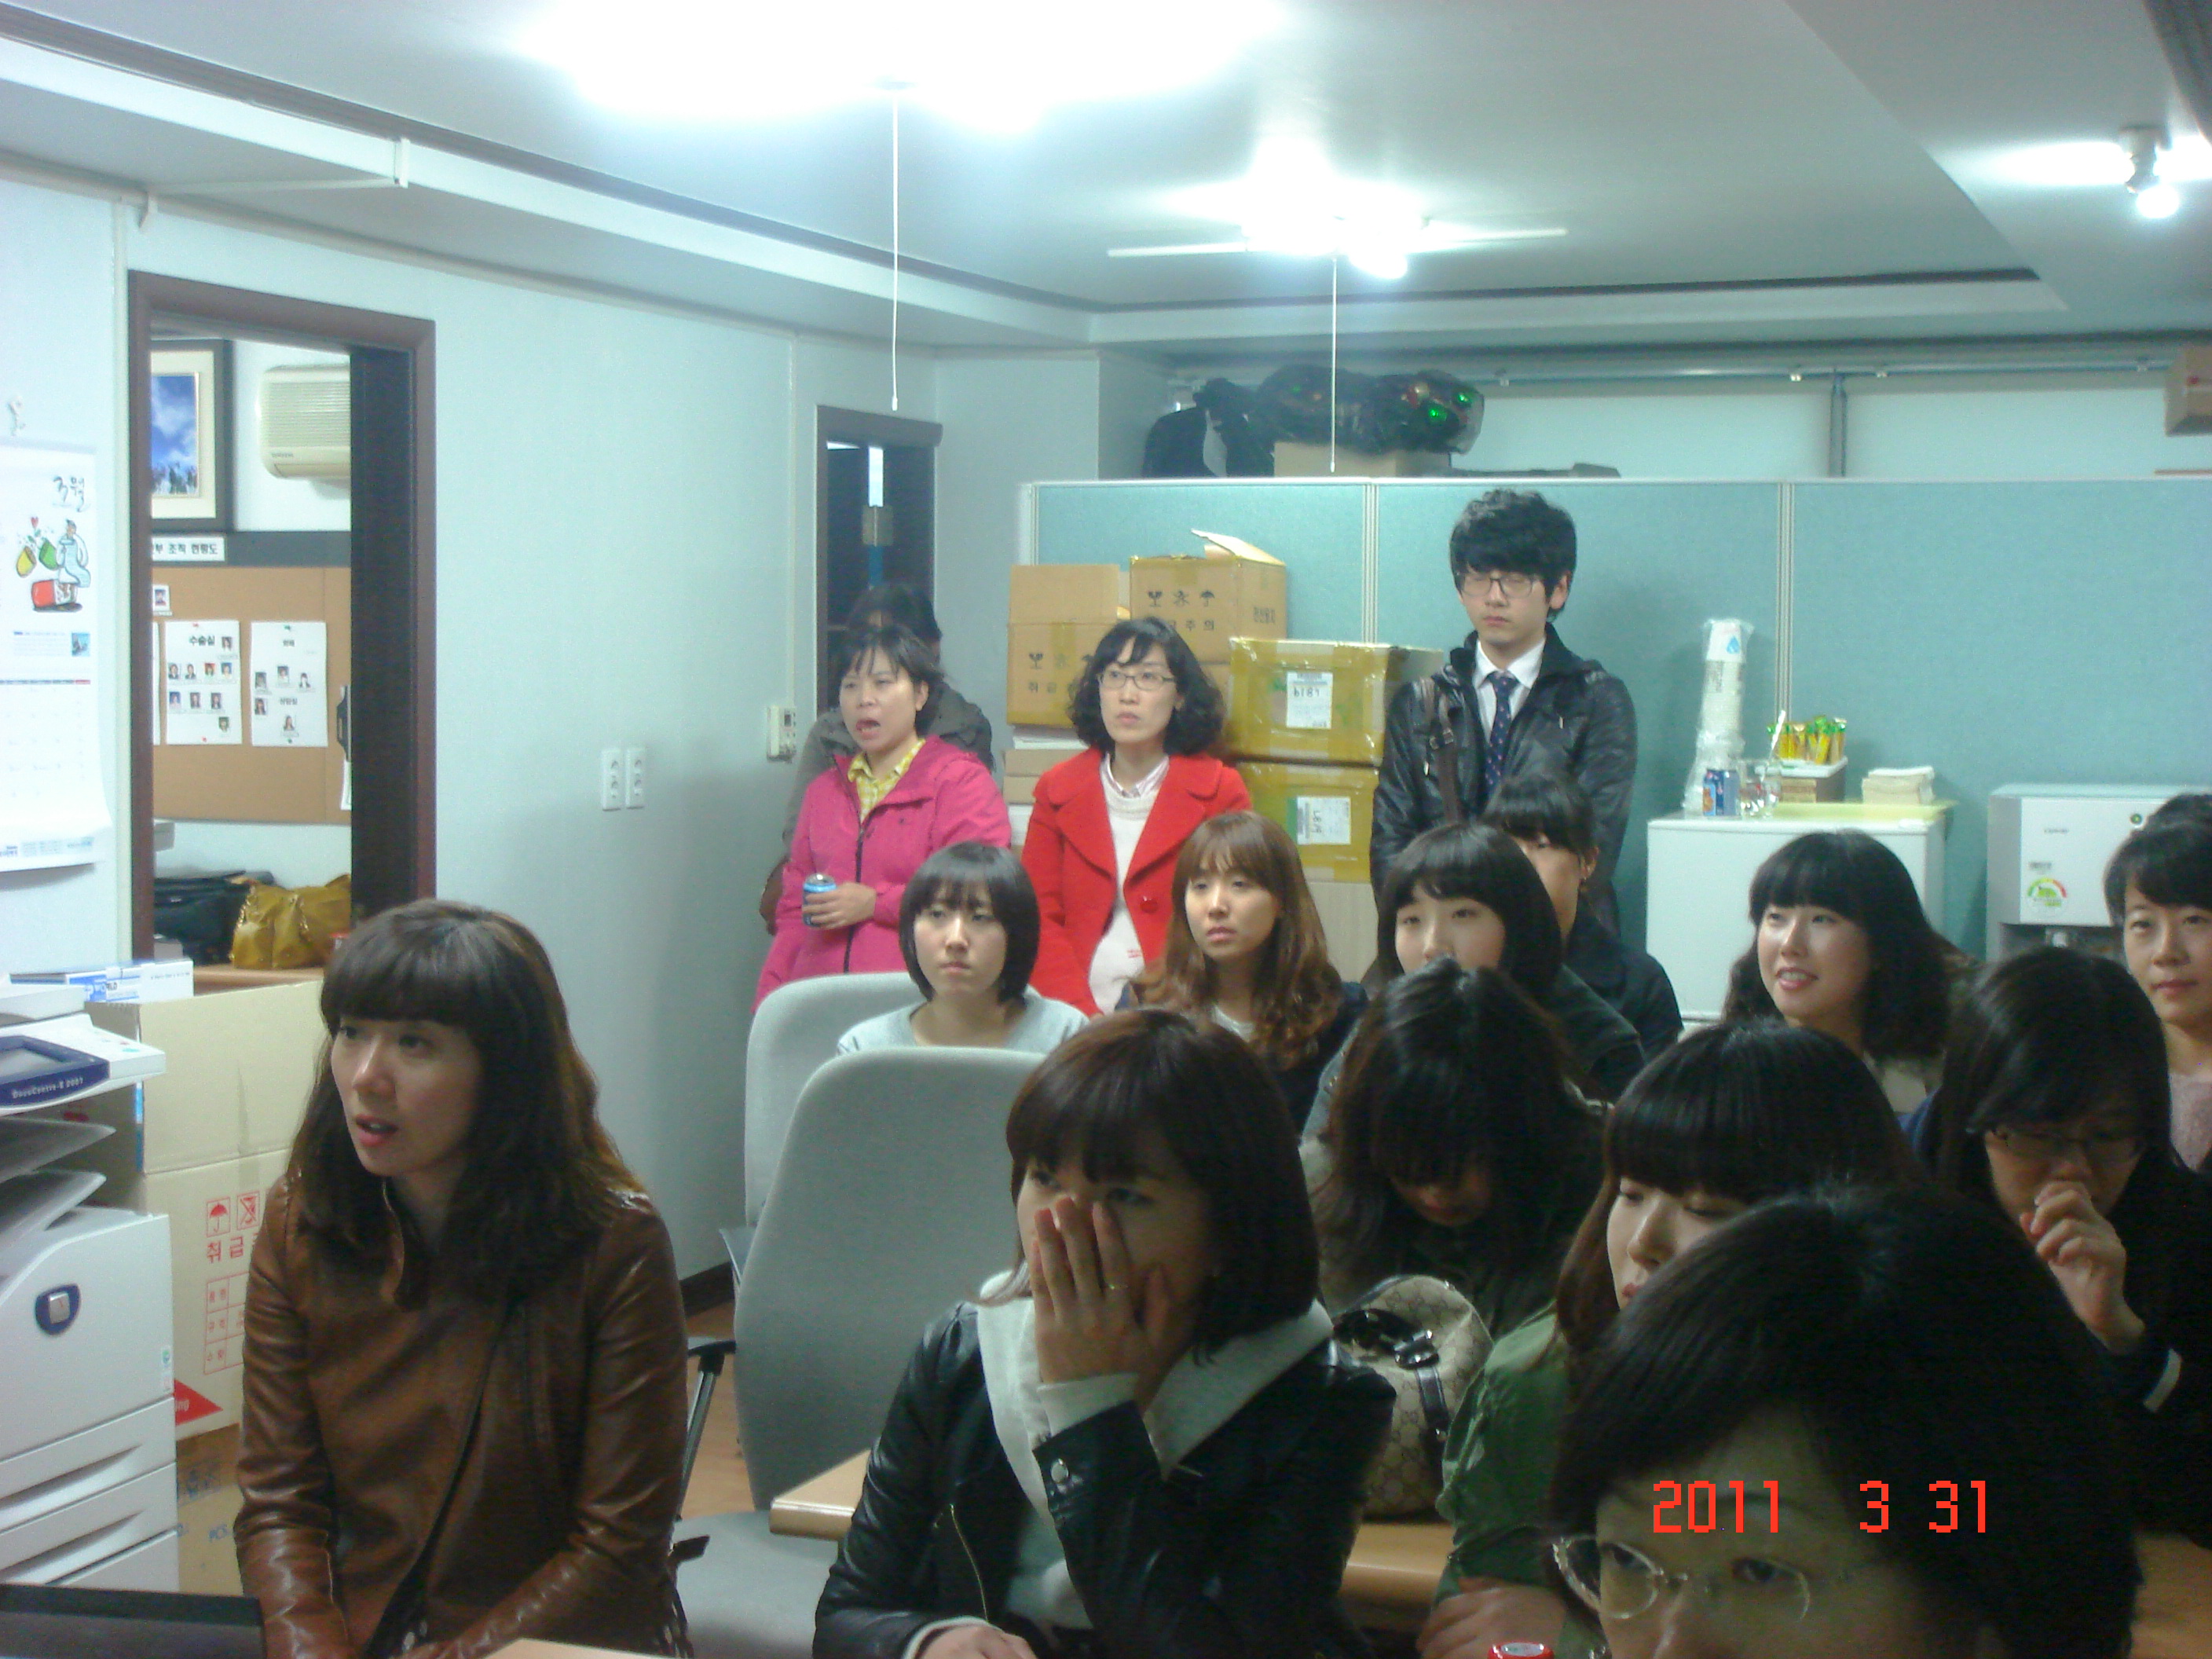 [강북점] 2011년 3월 31일 - 직무교육 실시 게시글의 2번째 첨부파일입니다.